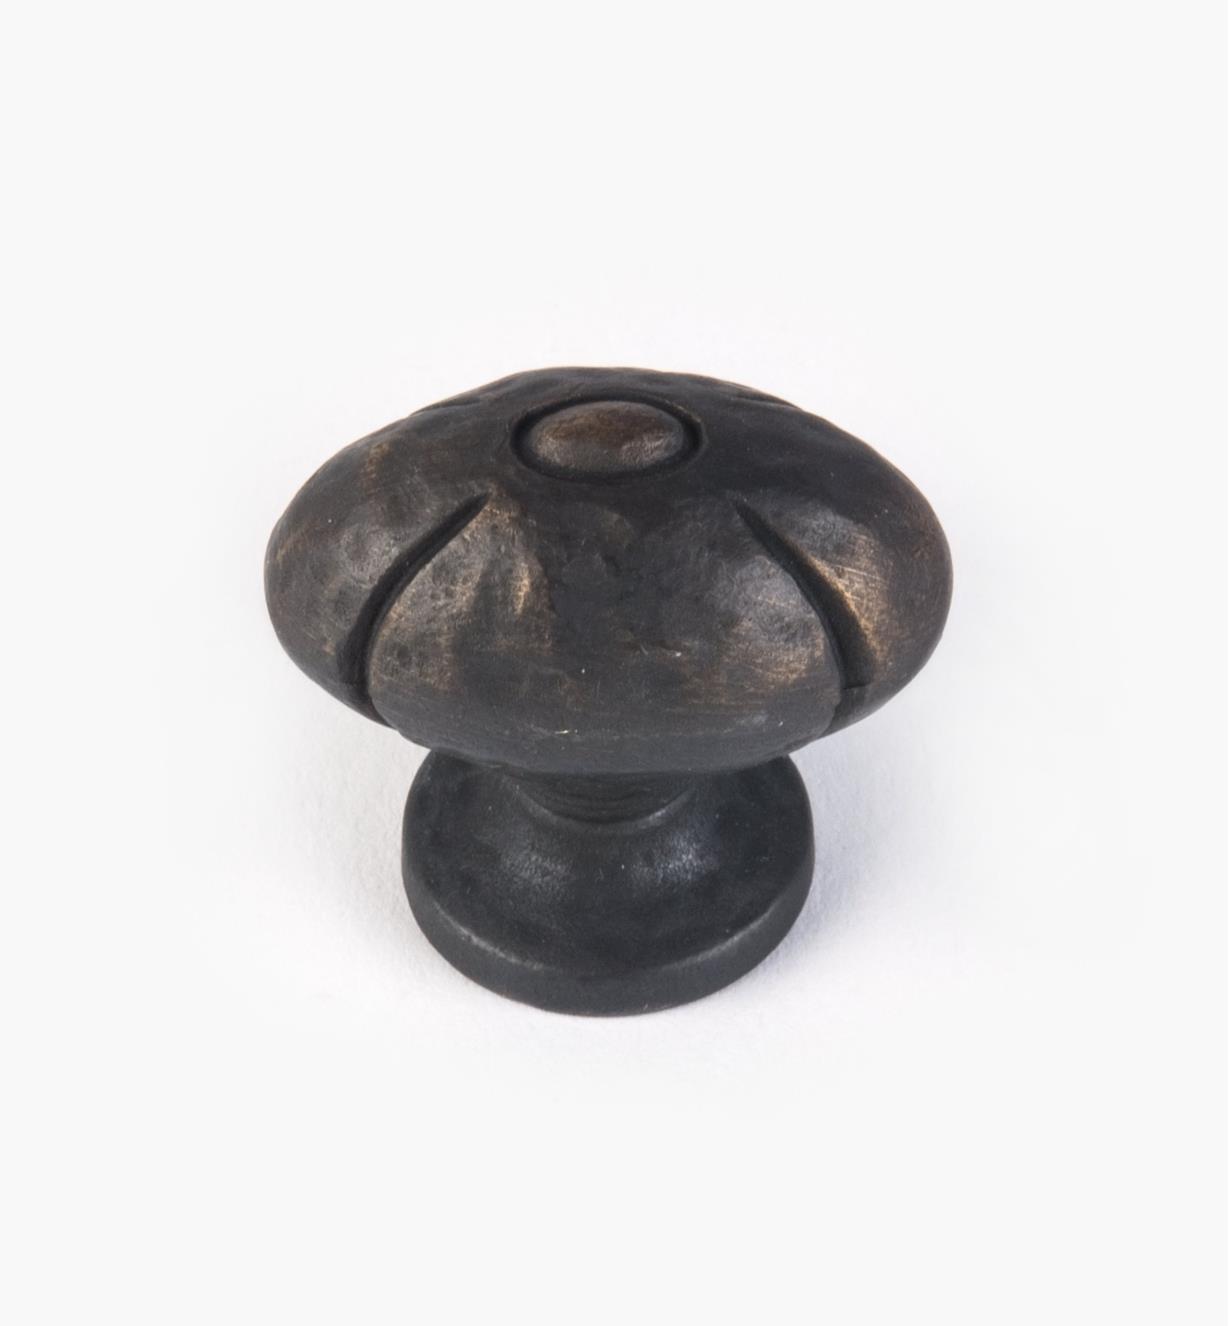 02A5172 - Bouton ovale, série Sienne classique, fini bronze antique, 1 1/4 po